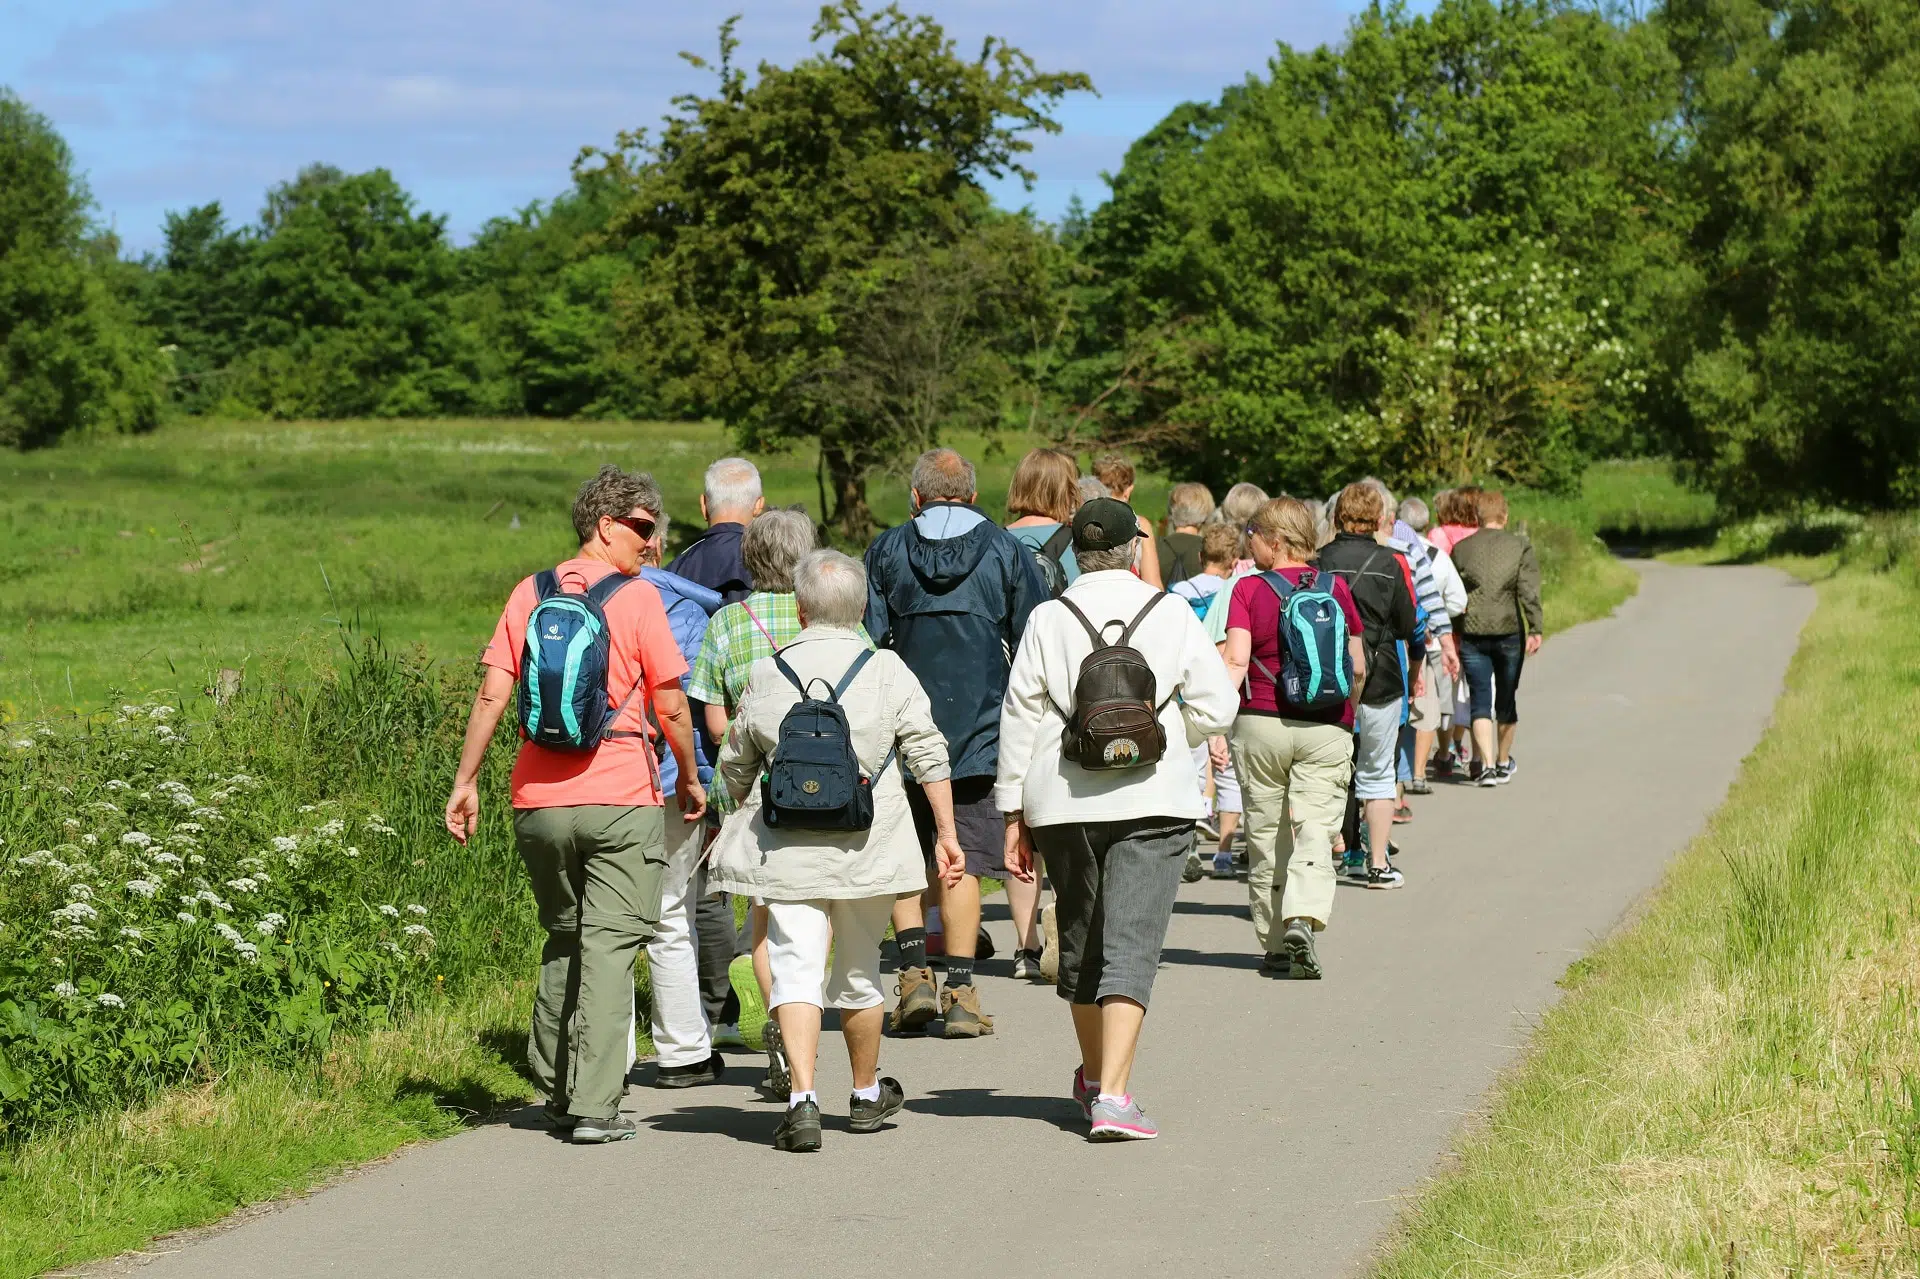 Groupe de personne marchant sur un sentier dans un parc